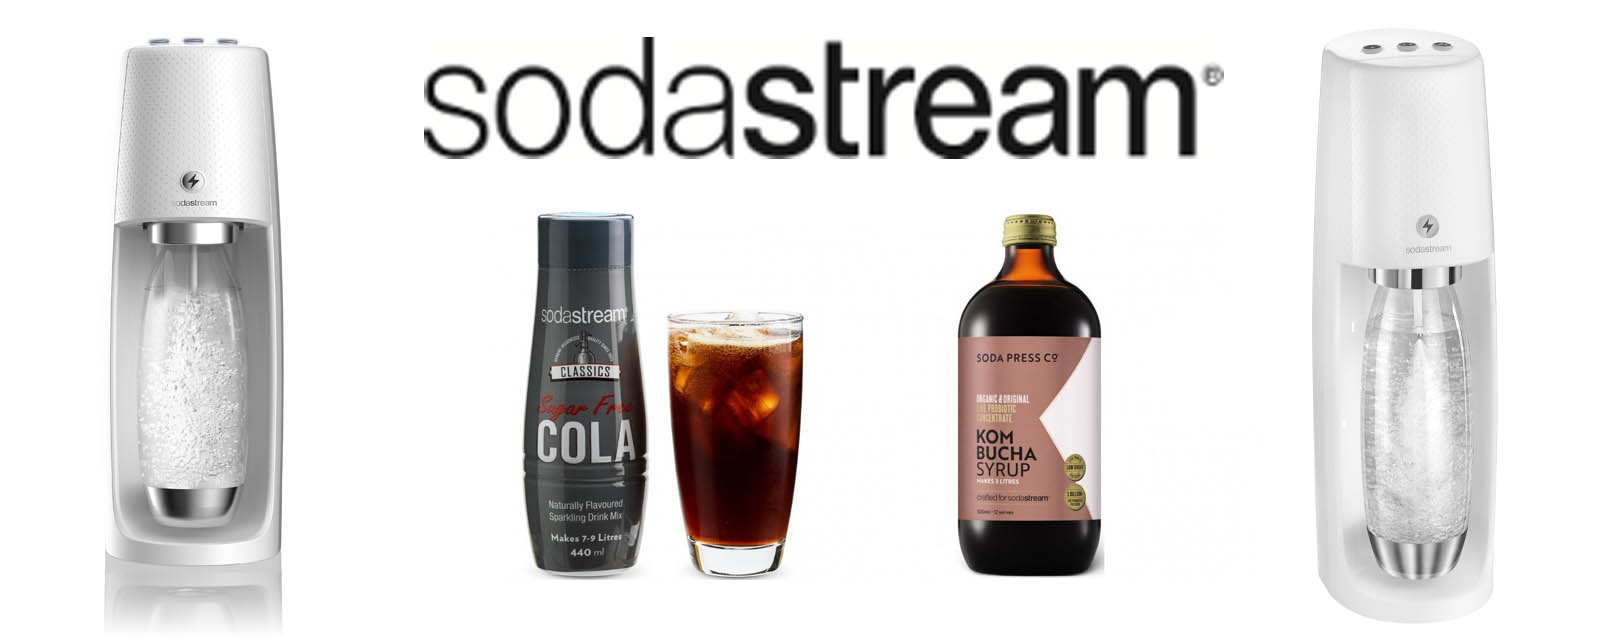 SodaStream Spirit One Touch Review + SodaStream Recipes